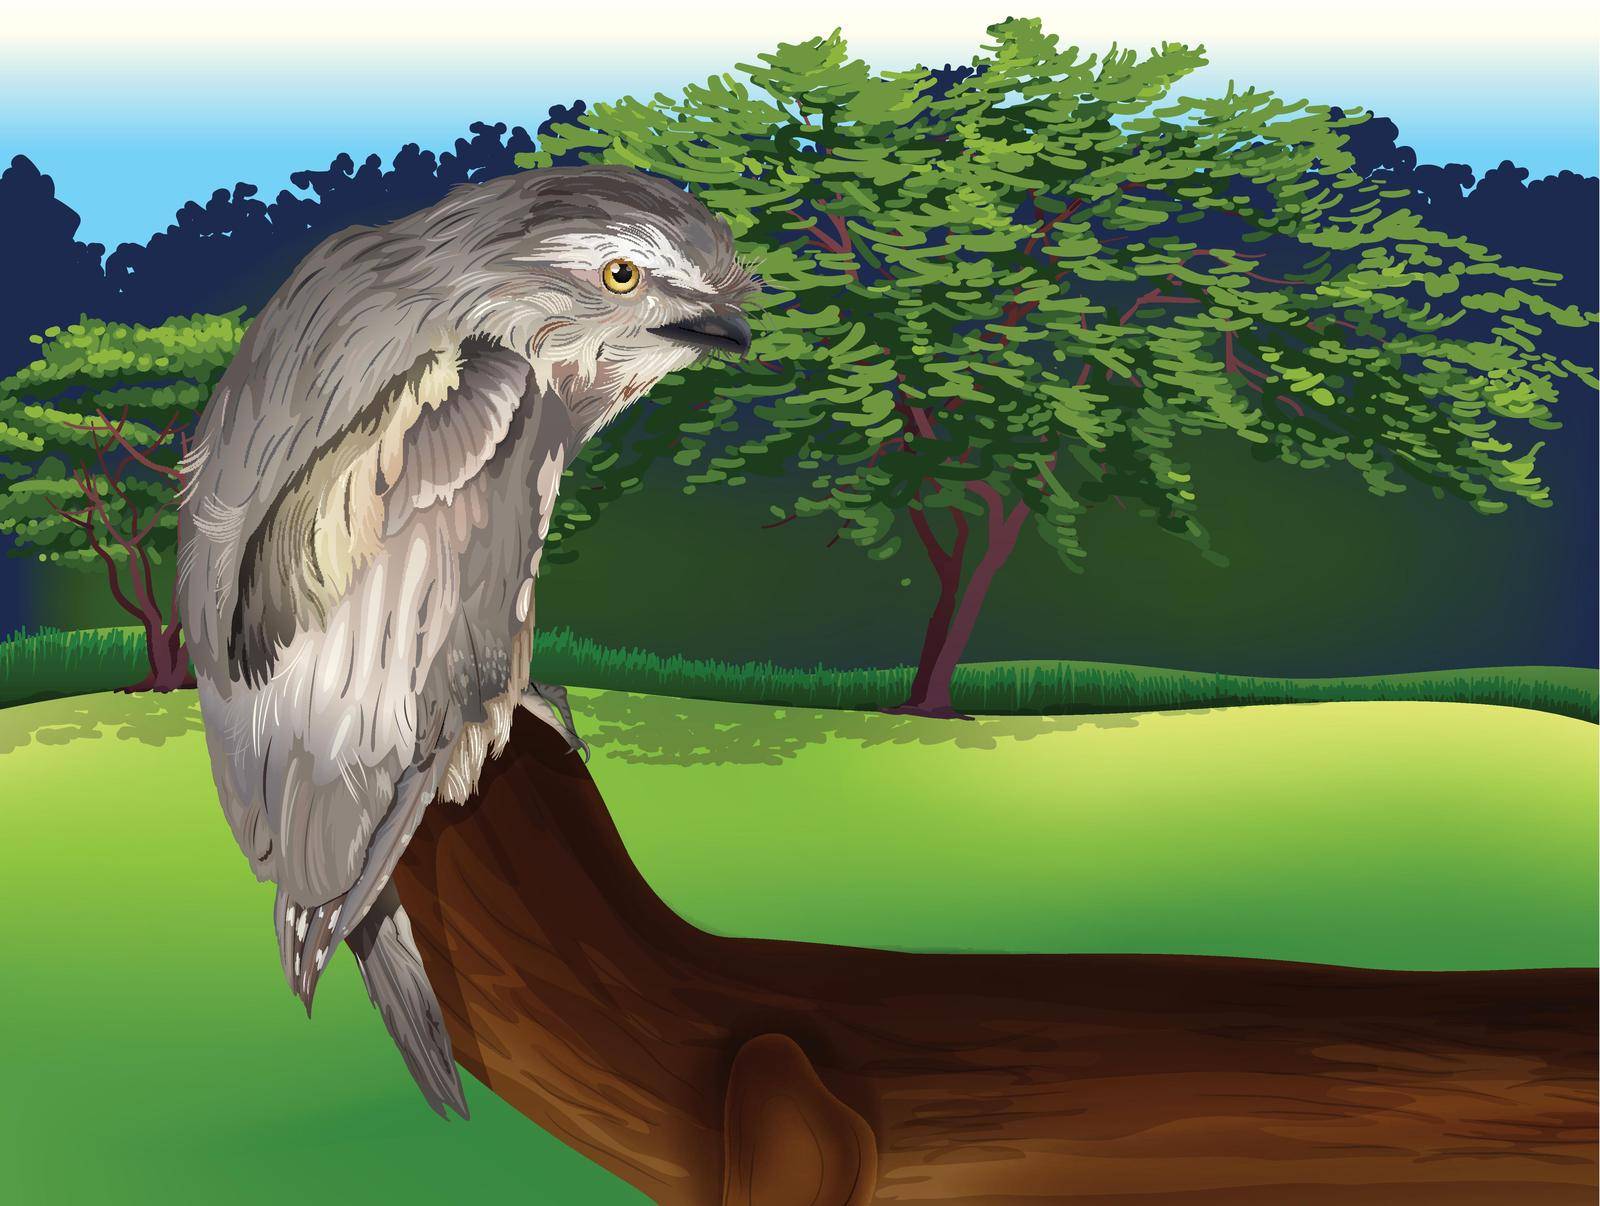 Illustration of a wild bird